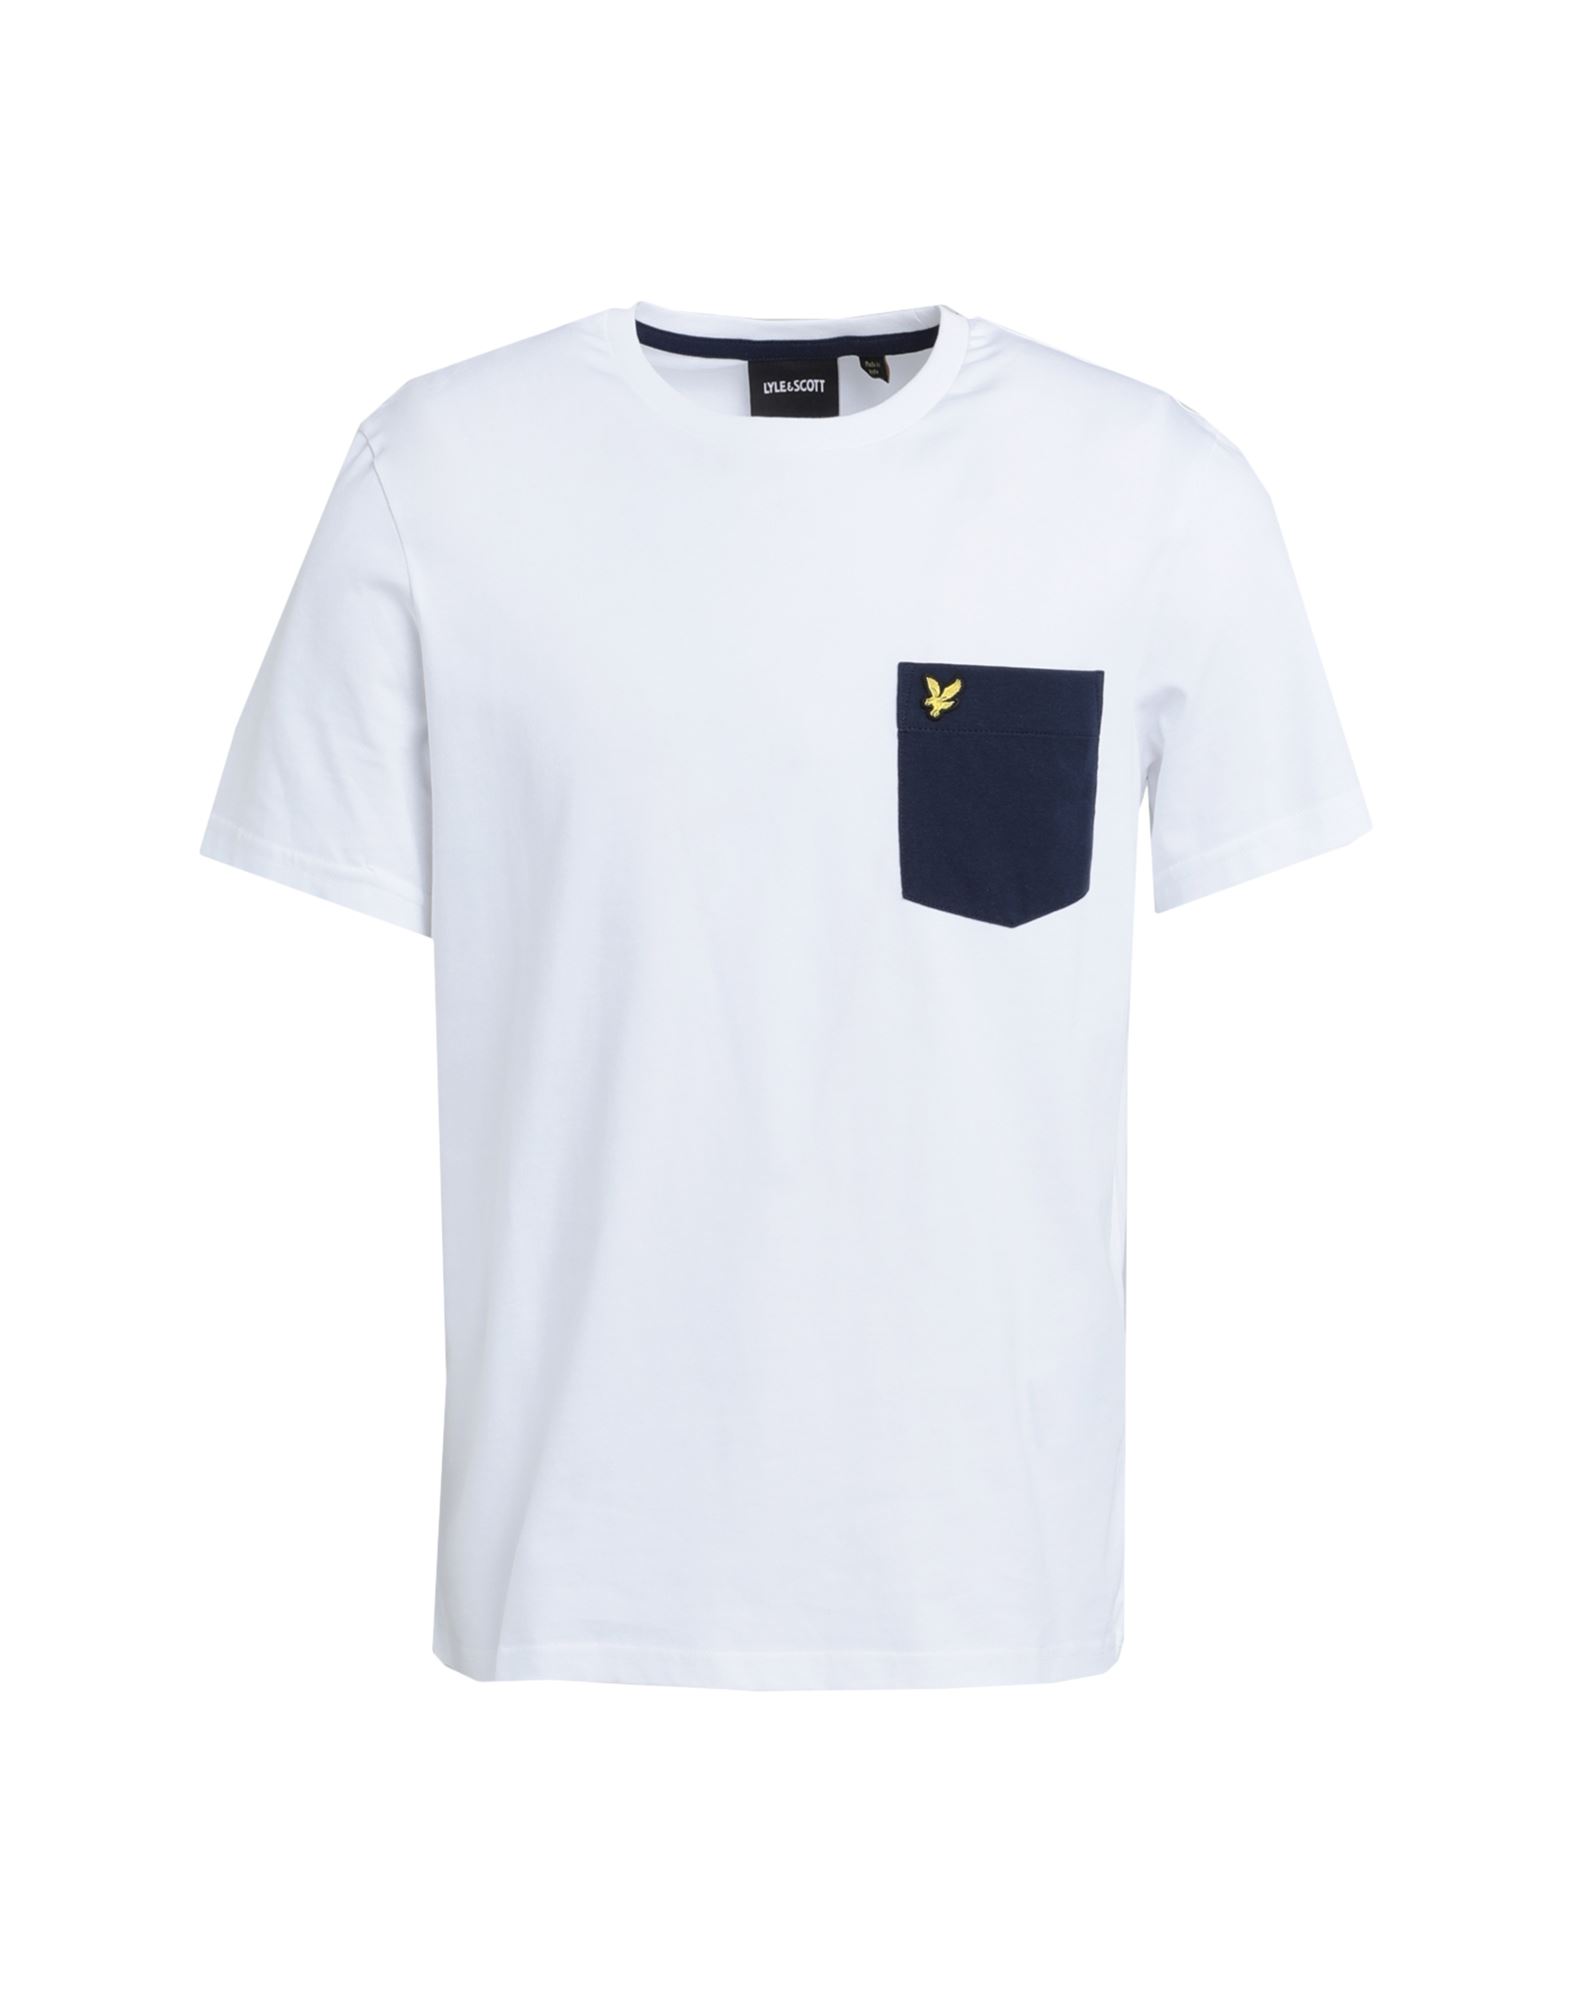 Lyle & Scott Man T-shirt White Size Xs Cotton